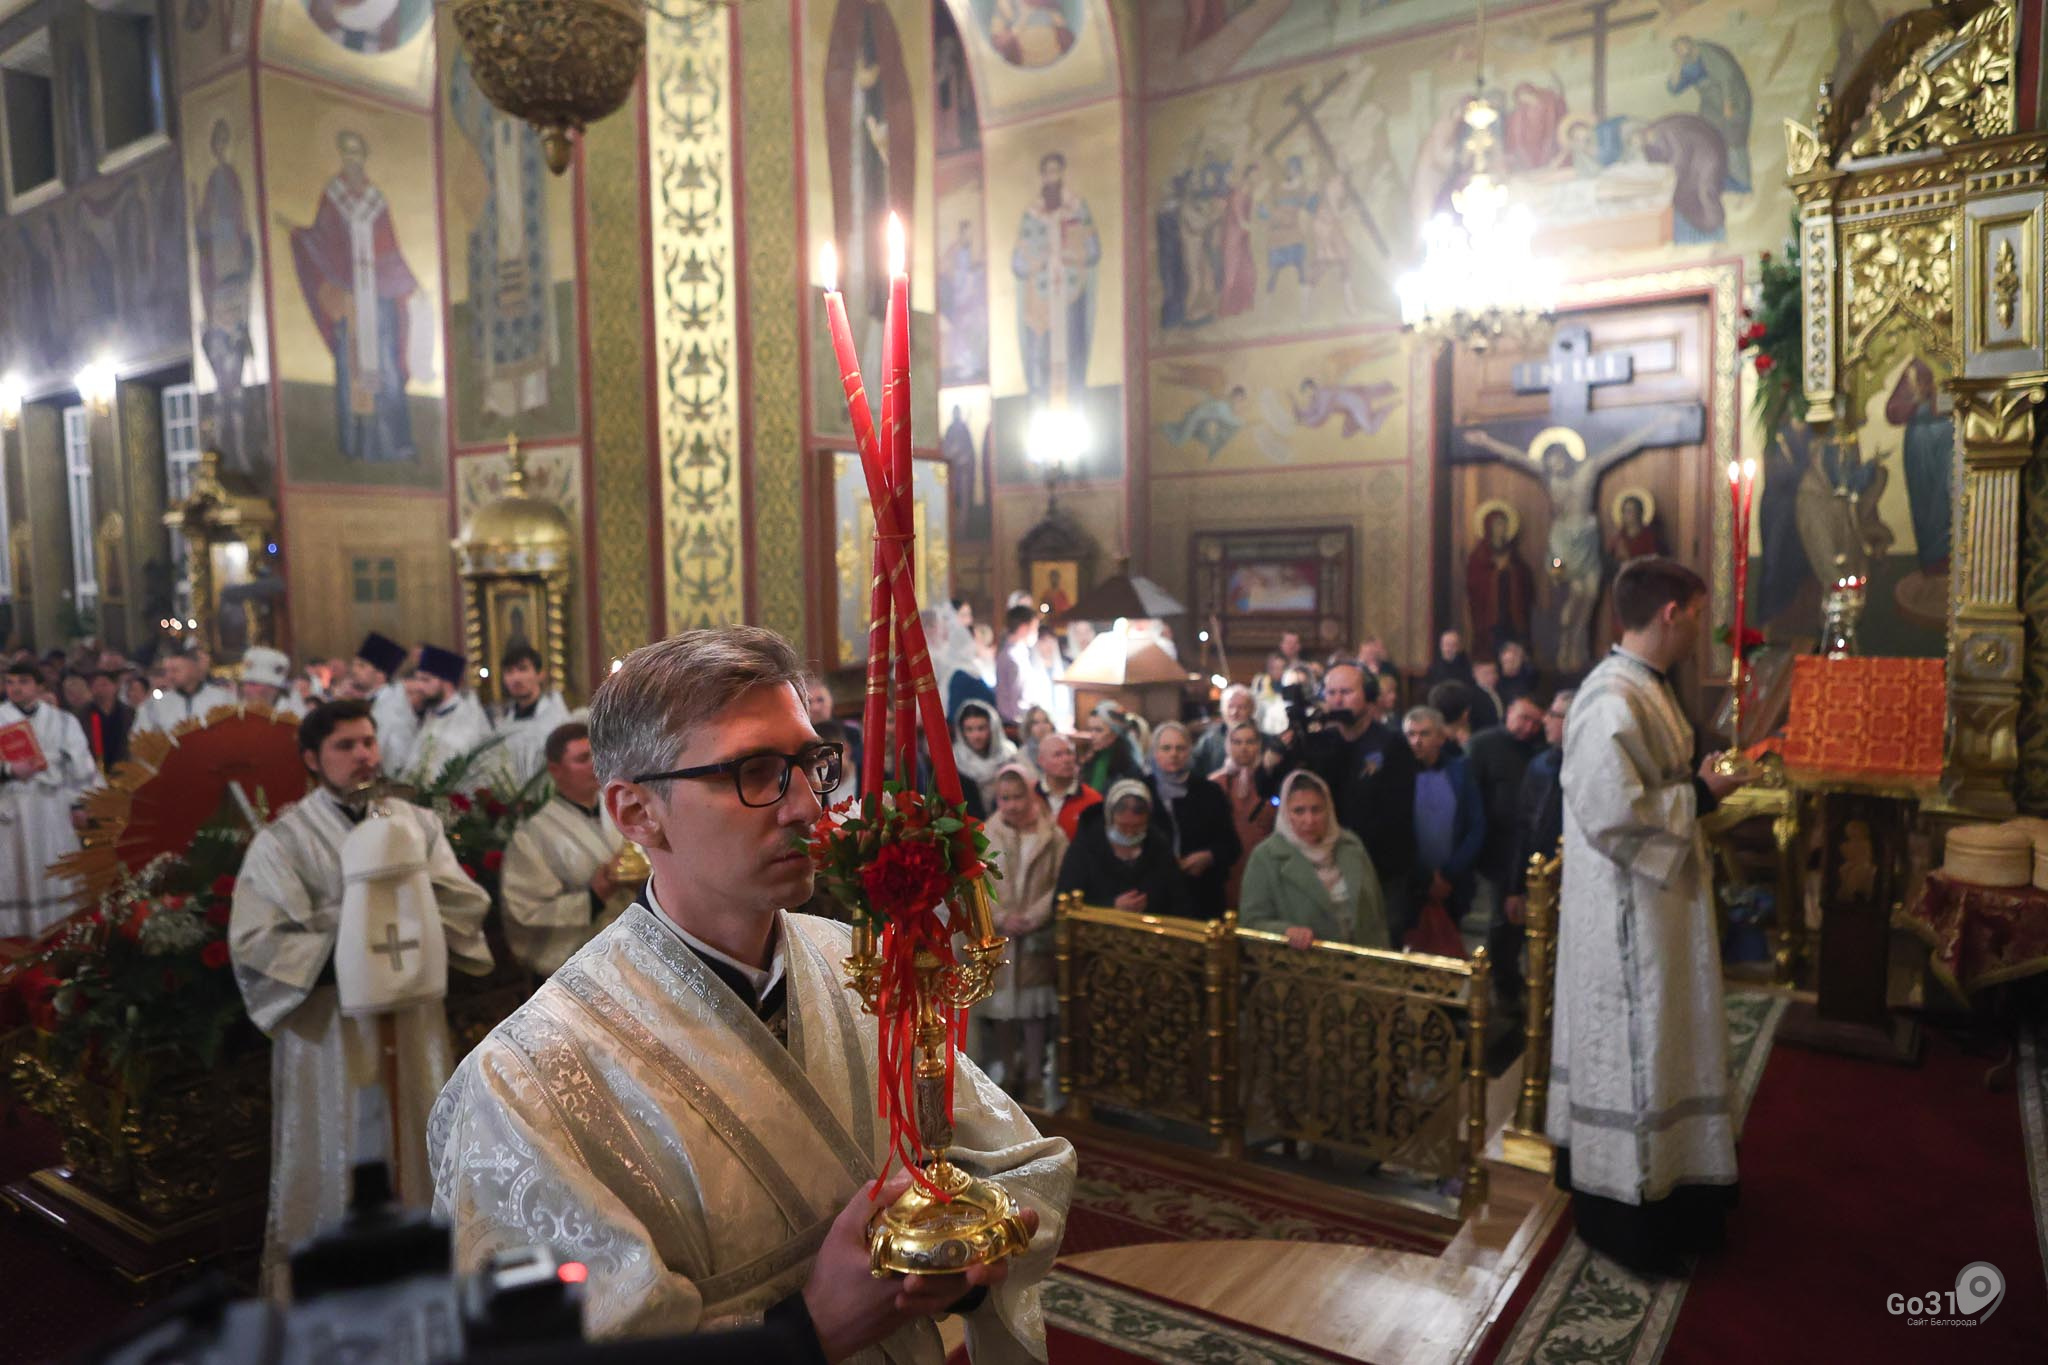 спасо преображенский кафедральный собор белгород